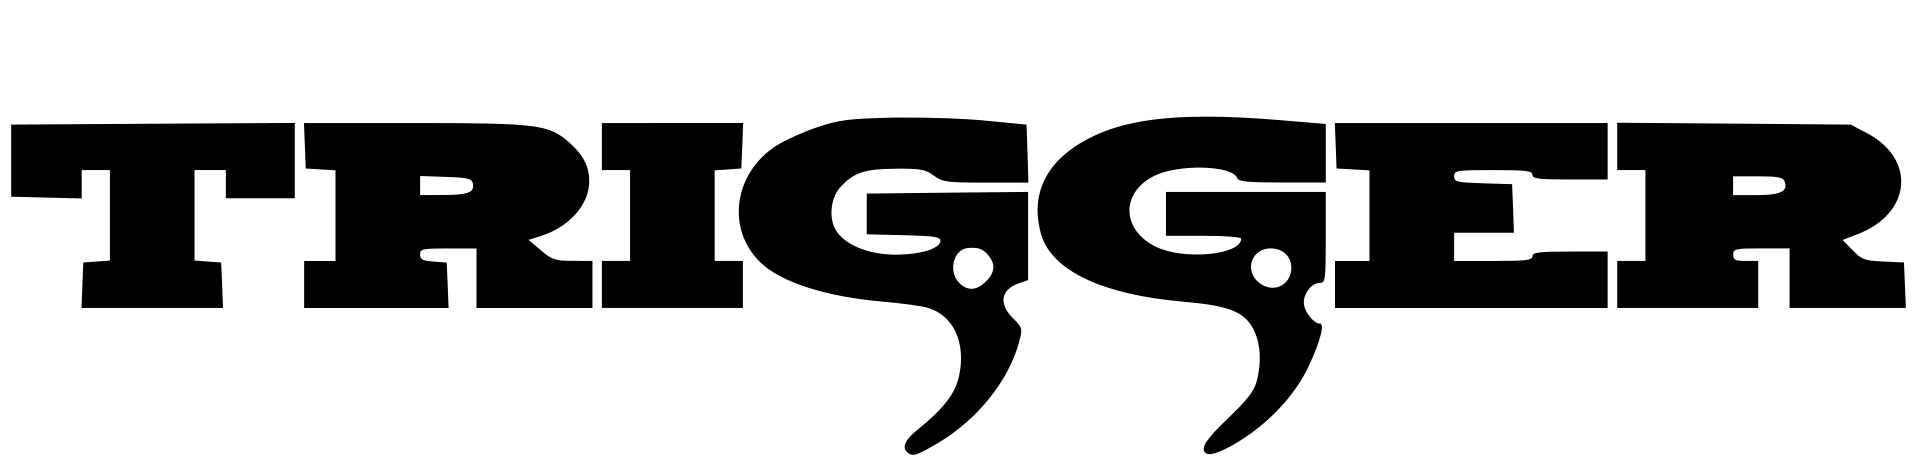 Plik:Trigger Logo.svg.png